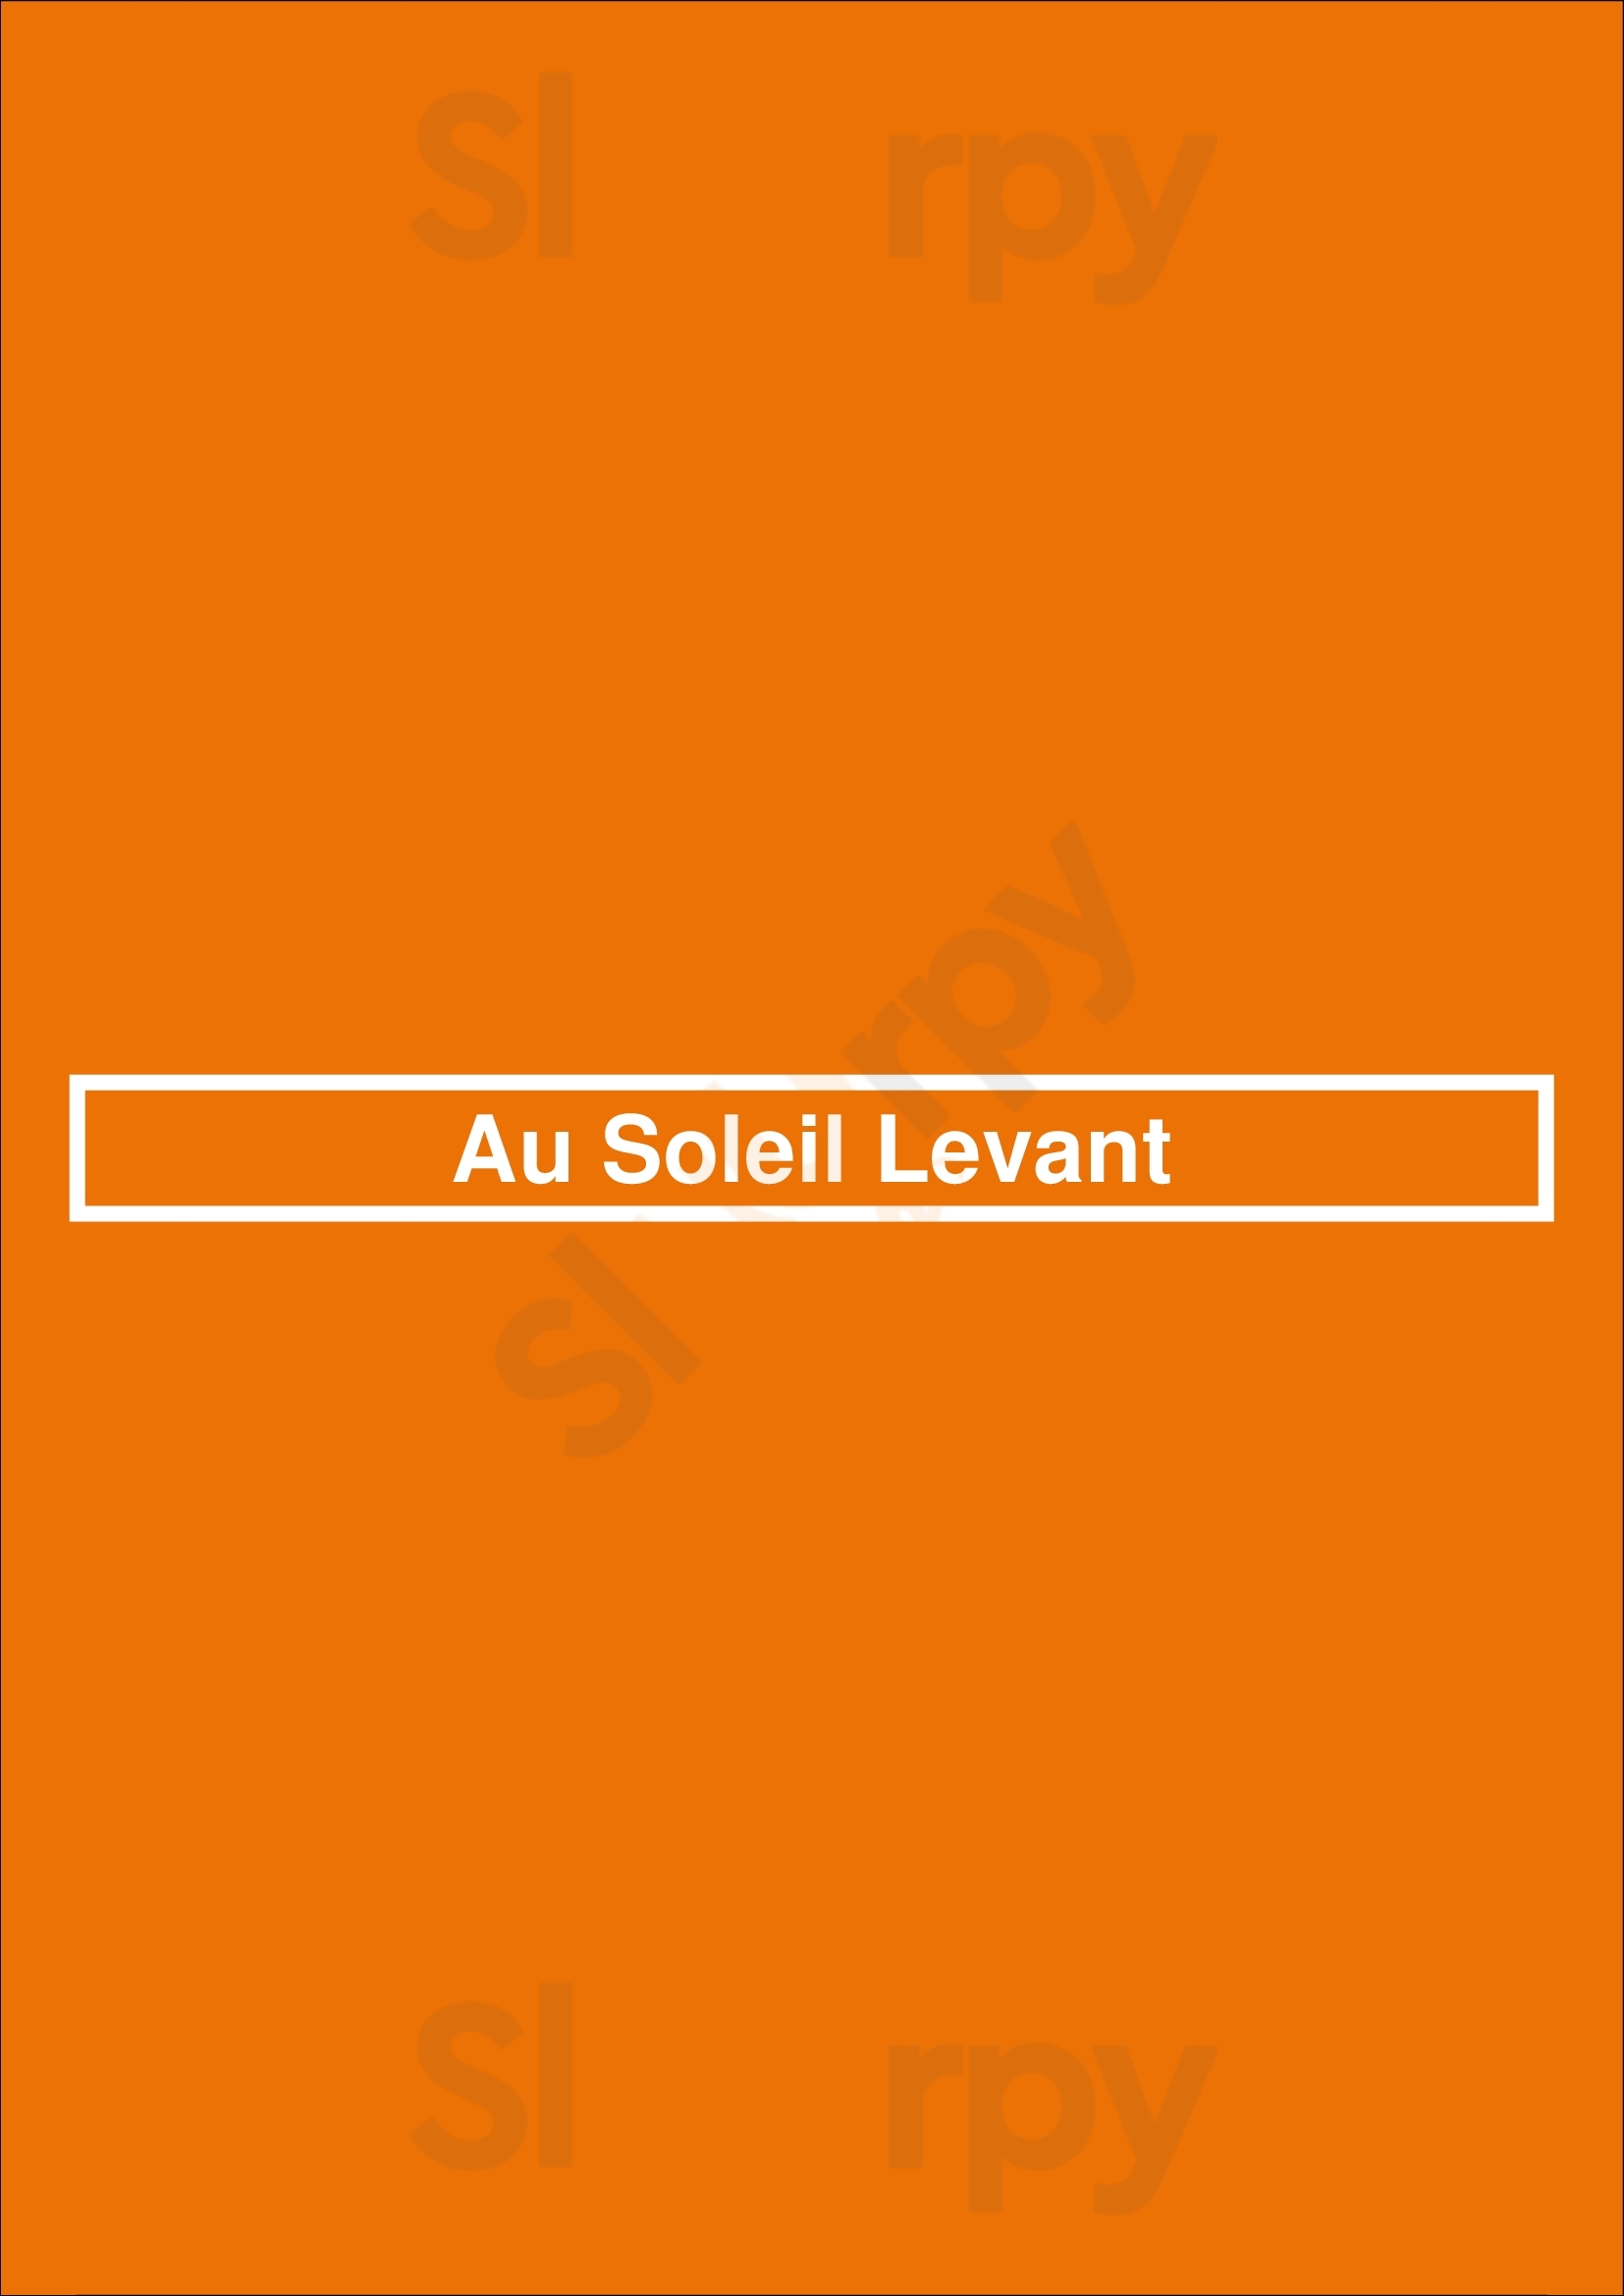 Au Soleil Levant Nantes Menu - 1